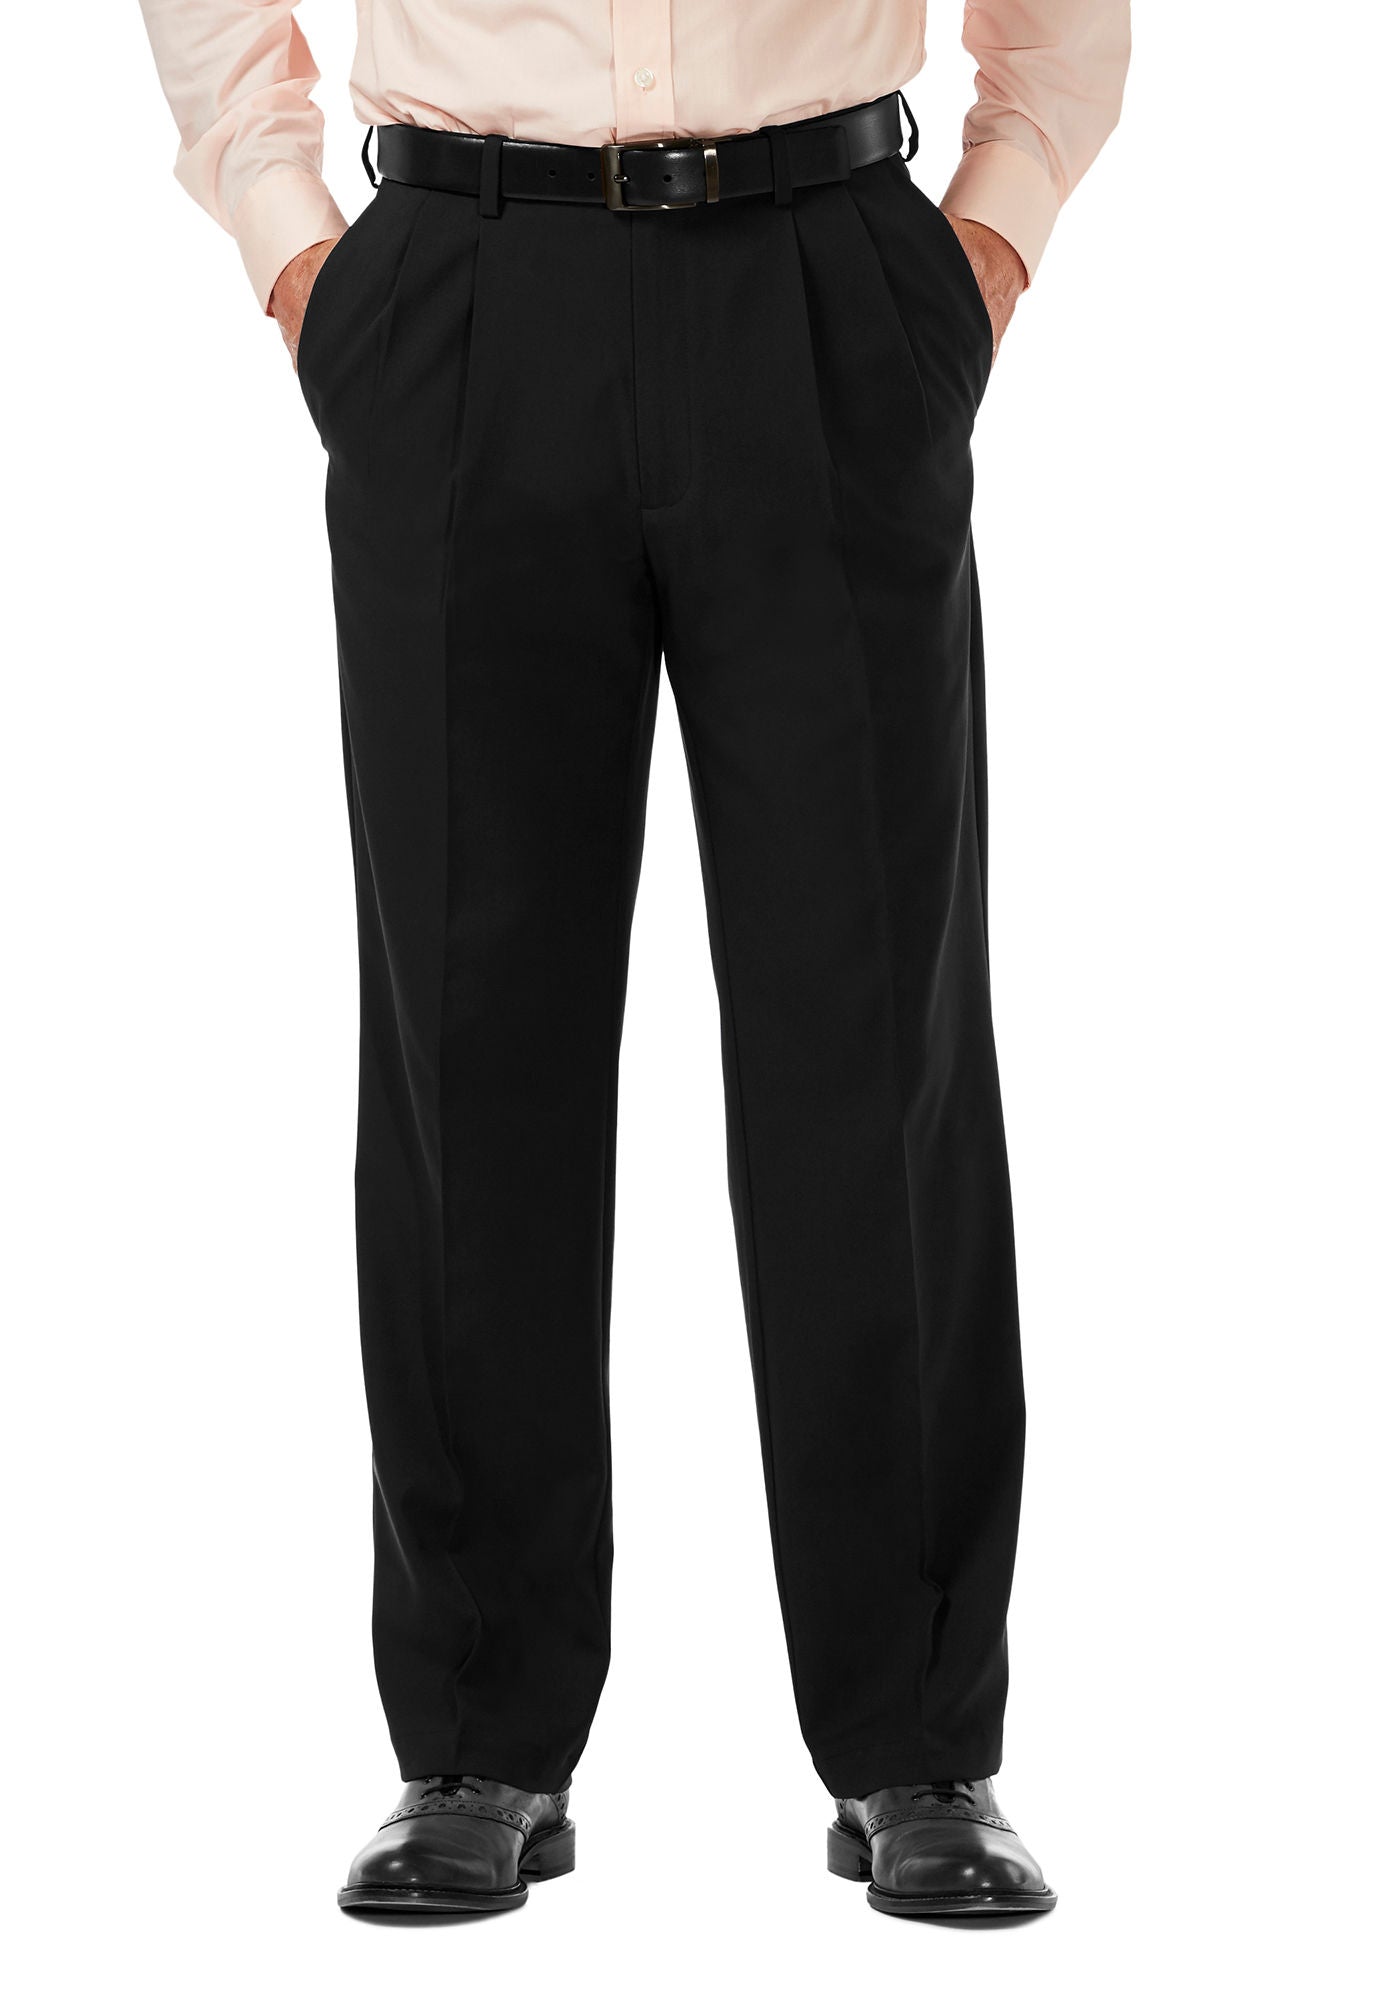 Men's Black, Pleated Front, ComfortWaist Dress Pants 99tux